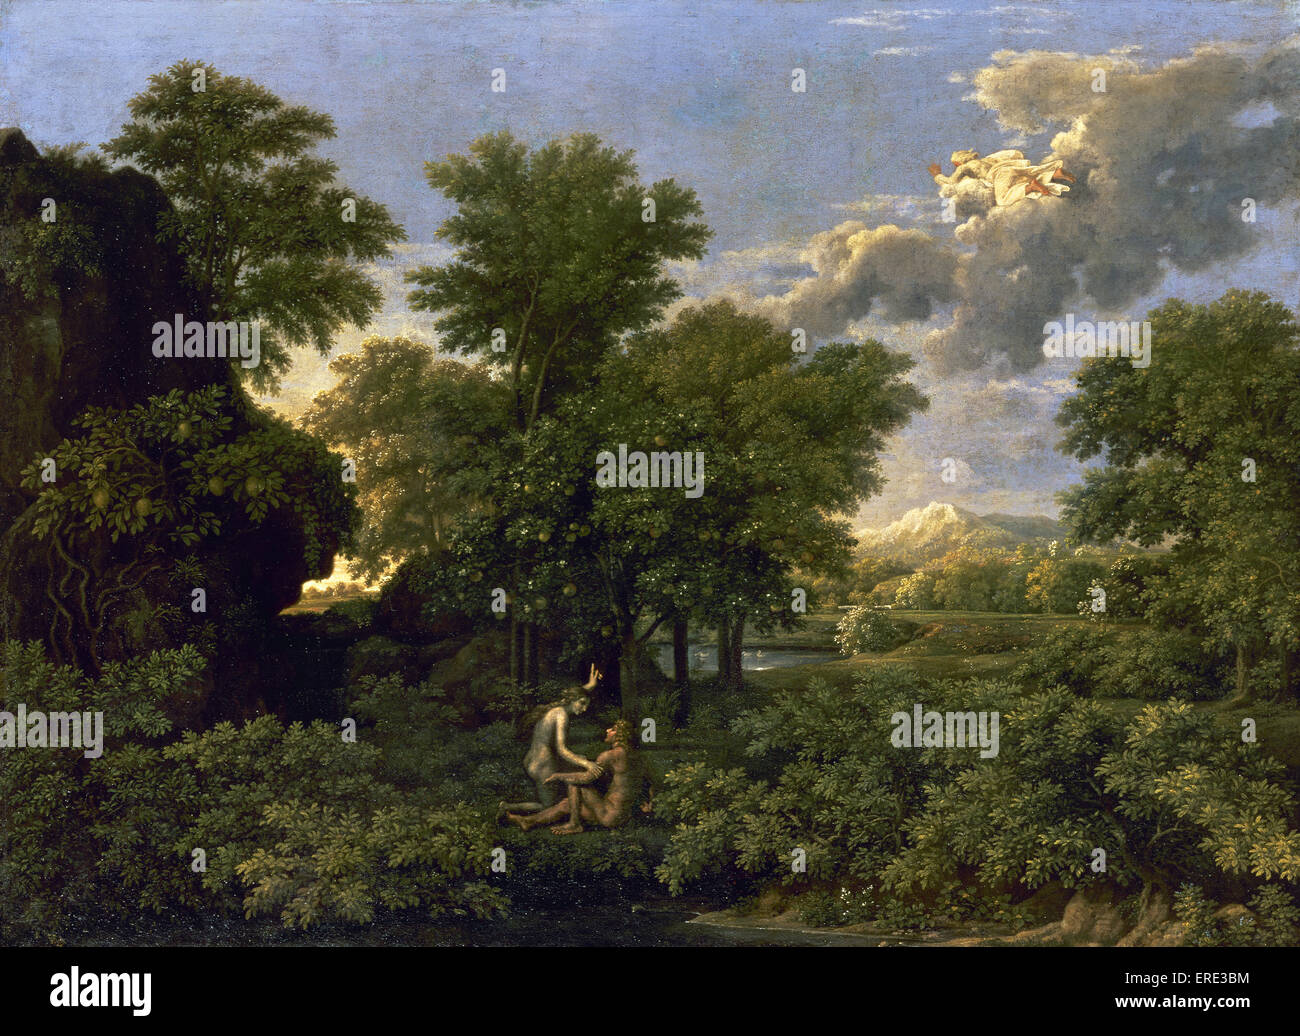 Nicolas Poussin (1594-1665). El pintor francés. Resorte (el paraíso terrenal). 1660. El clasicismo. El aceite. El Museo del Louvre. París. Francia. Foto de stock